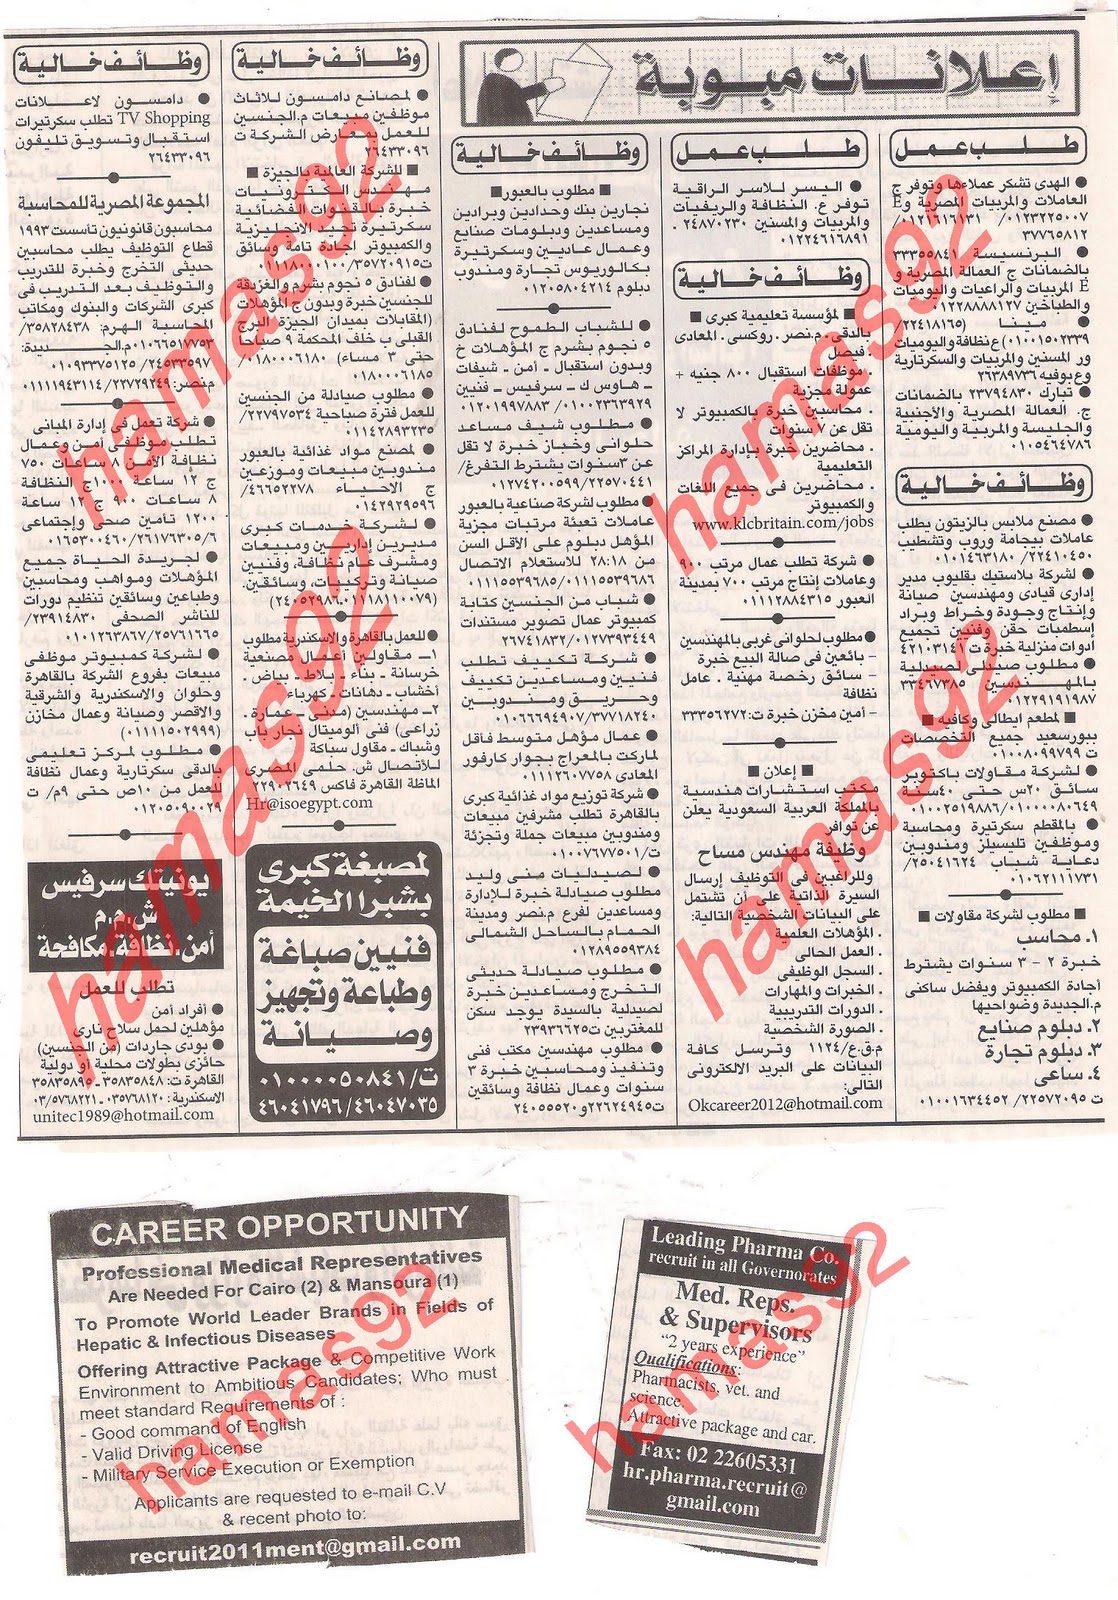 وظائف مصر , وظائف جريدة الاهرام الجمعة 2  ديسمبر 2011 , الجزء الاول Picture+007